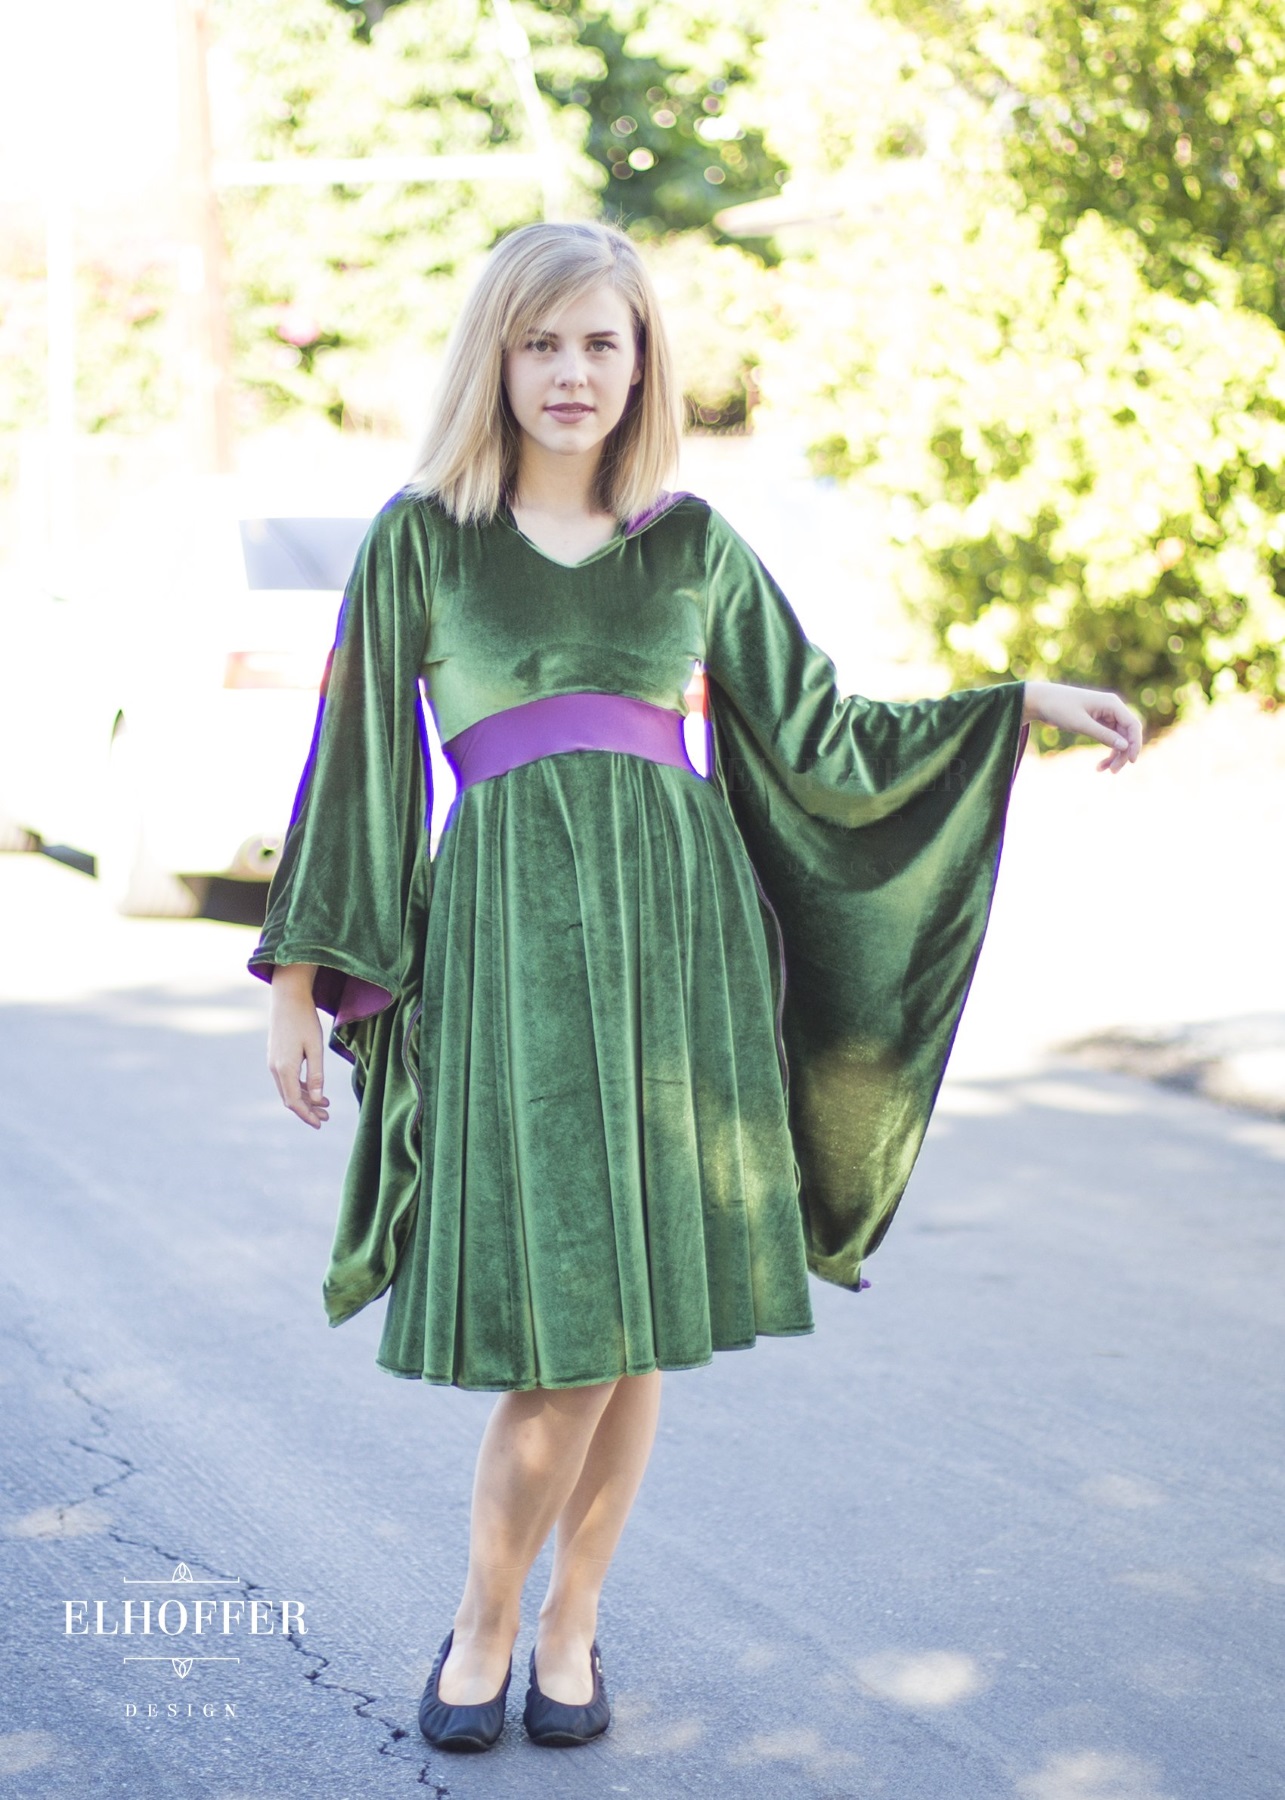 Star Wars Padme Amidala Velvet Dress by Elhoffer Design